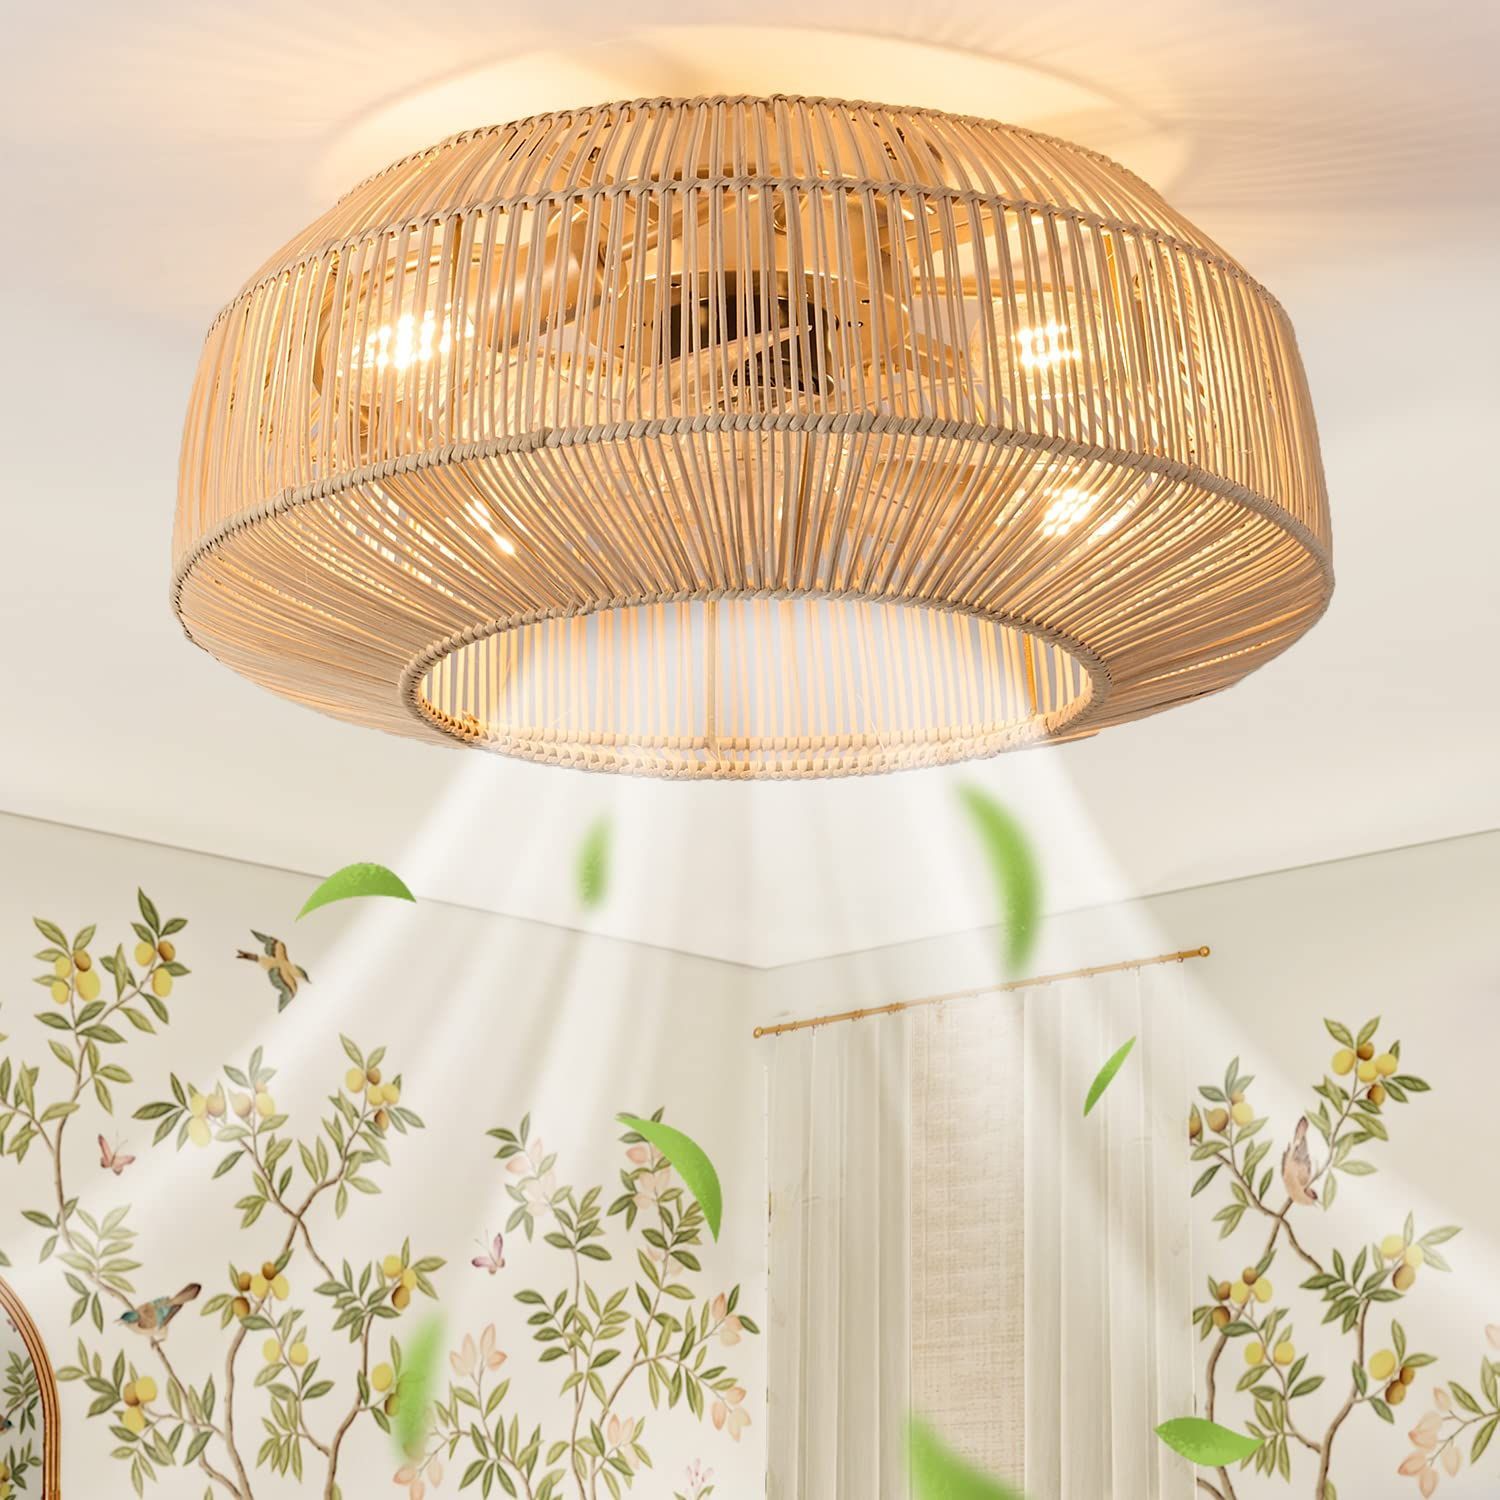 Chandelier Ceiling Lamp Trends : Top Chandelier Ceiling Lamp Trends for Stylish Home Decor